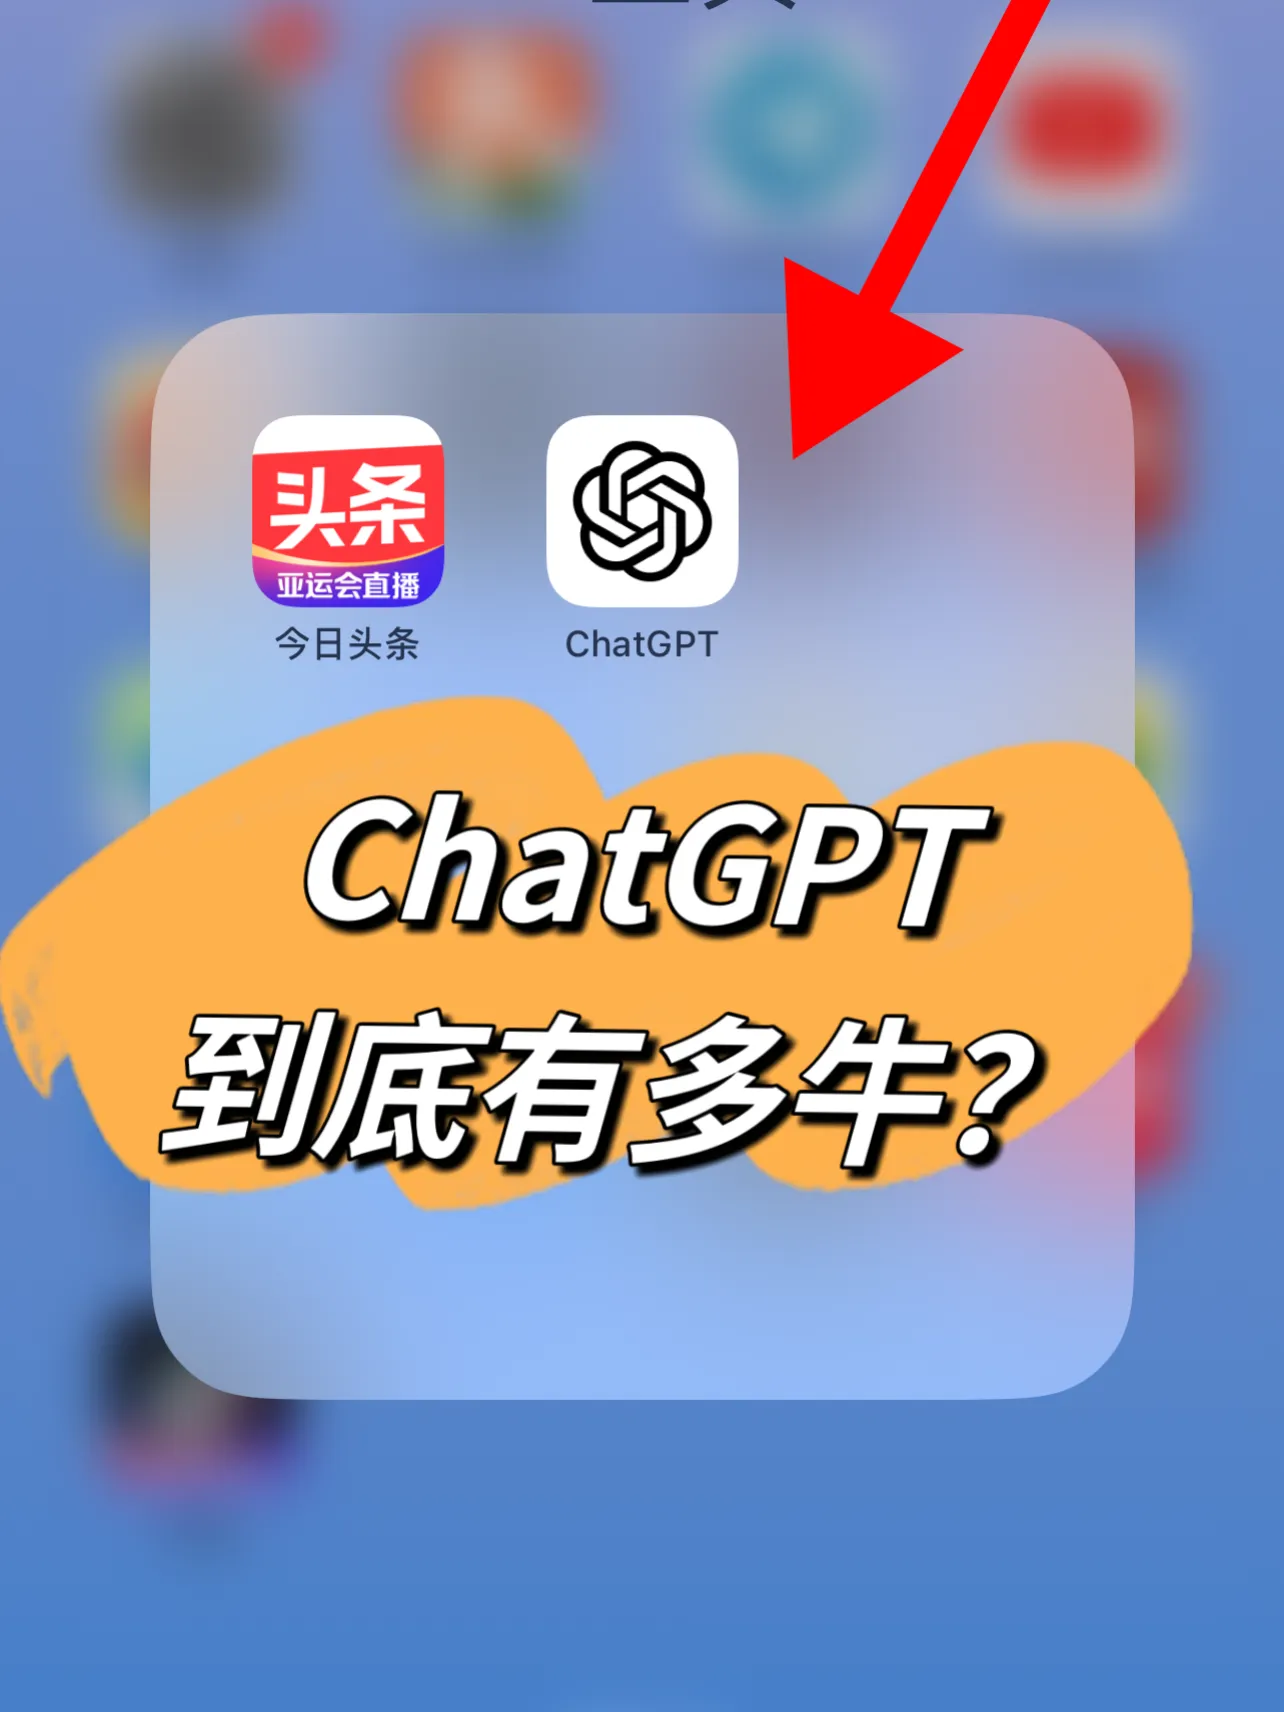 ?ChatGPT能否实现与中国教育共存？